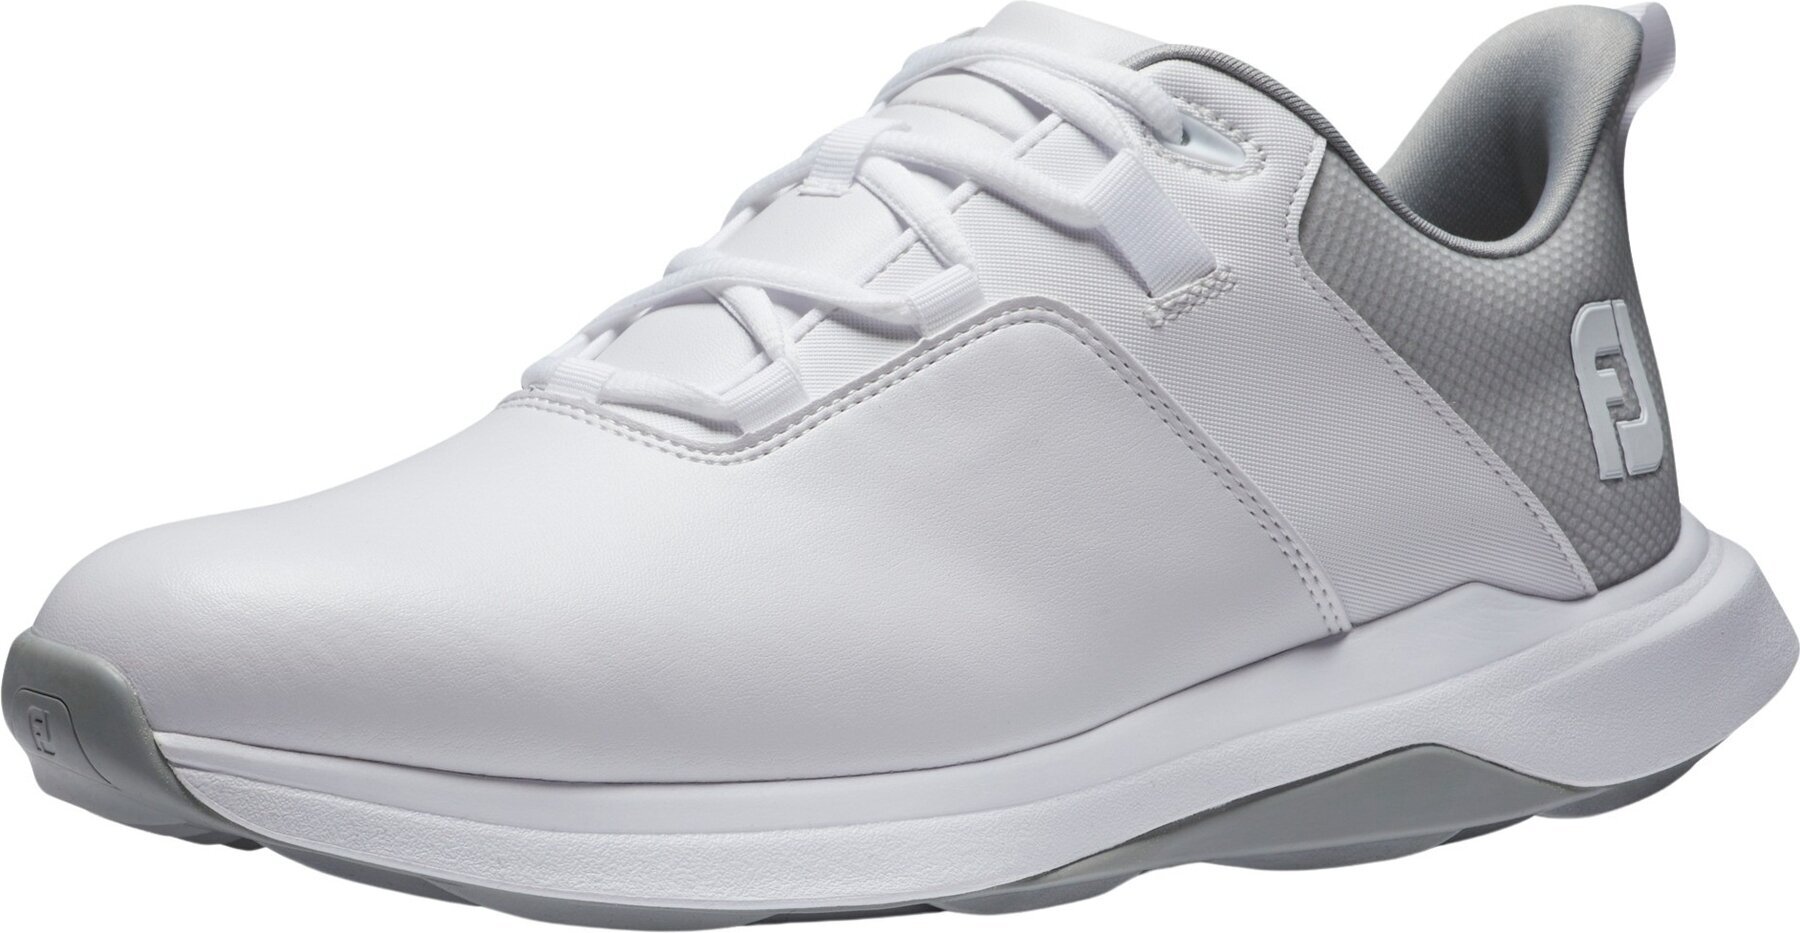 Chaussures de golf pour hommes Footjoy ProLite Mens Golf Shoes White/Grey 45